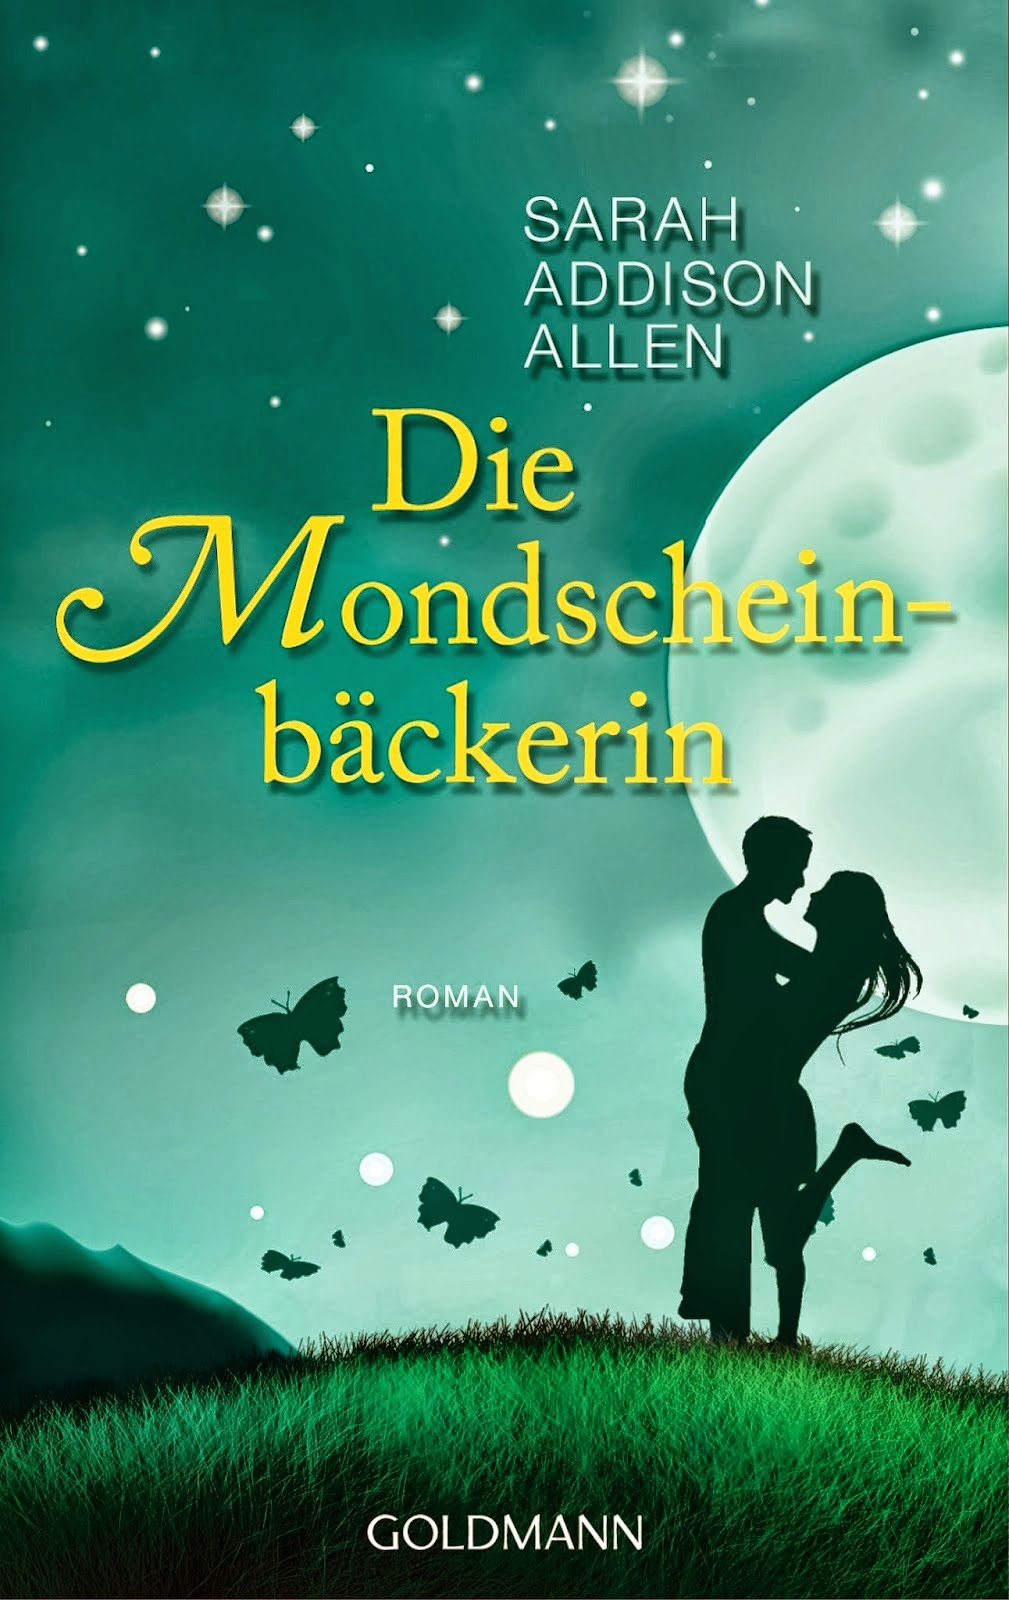 http://www.randomhouse.de/Taschenbuch/Die-Mondscheinbaeckerin-Roman/Sarah-Addison-Allen/e362181.rhd